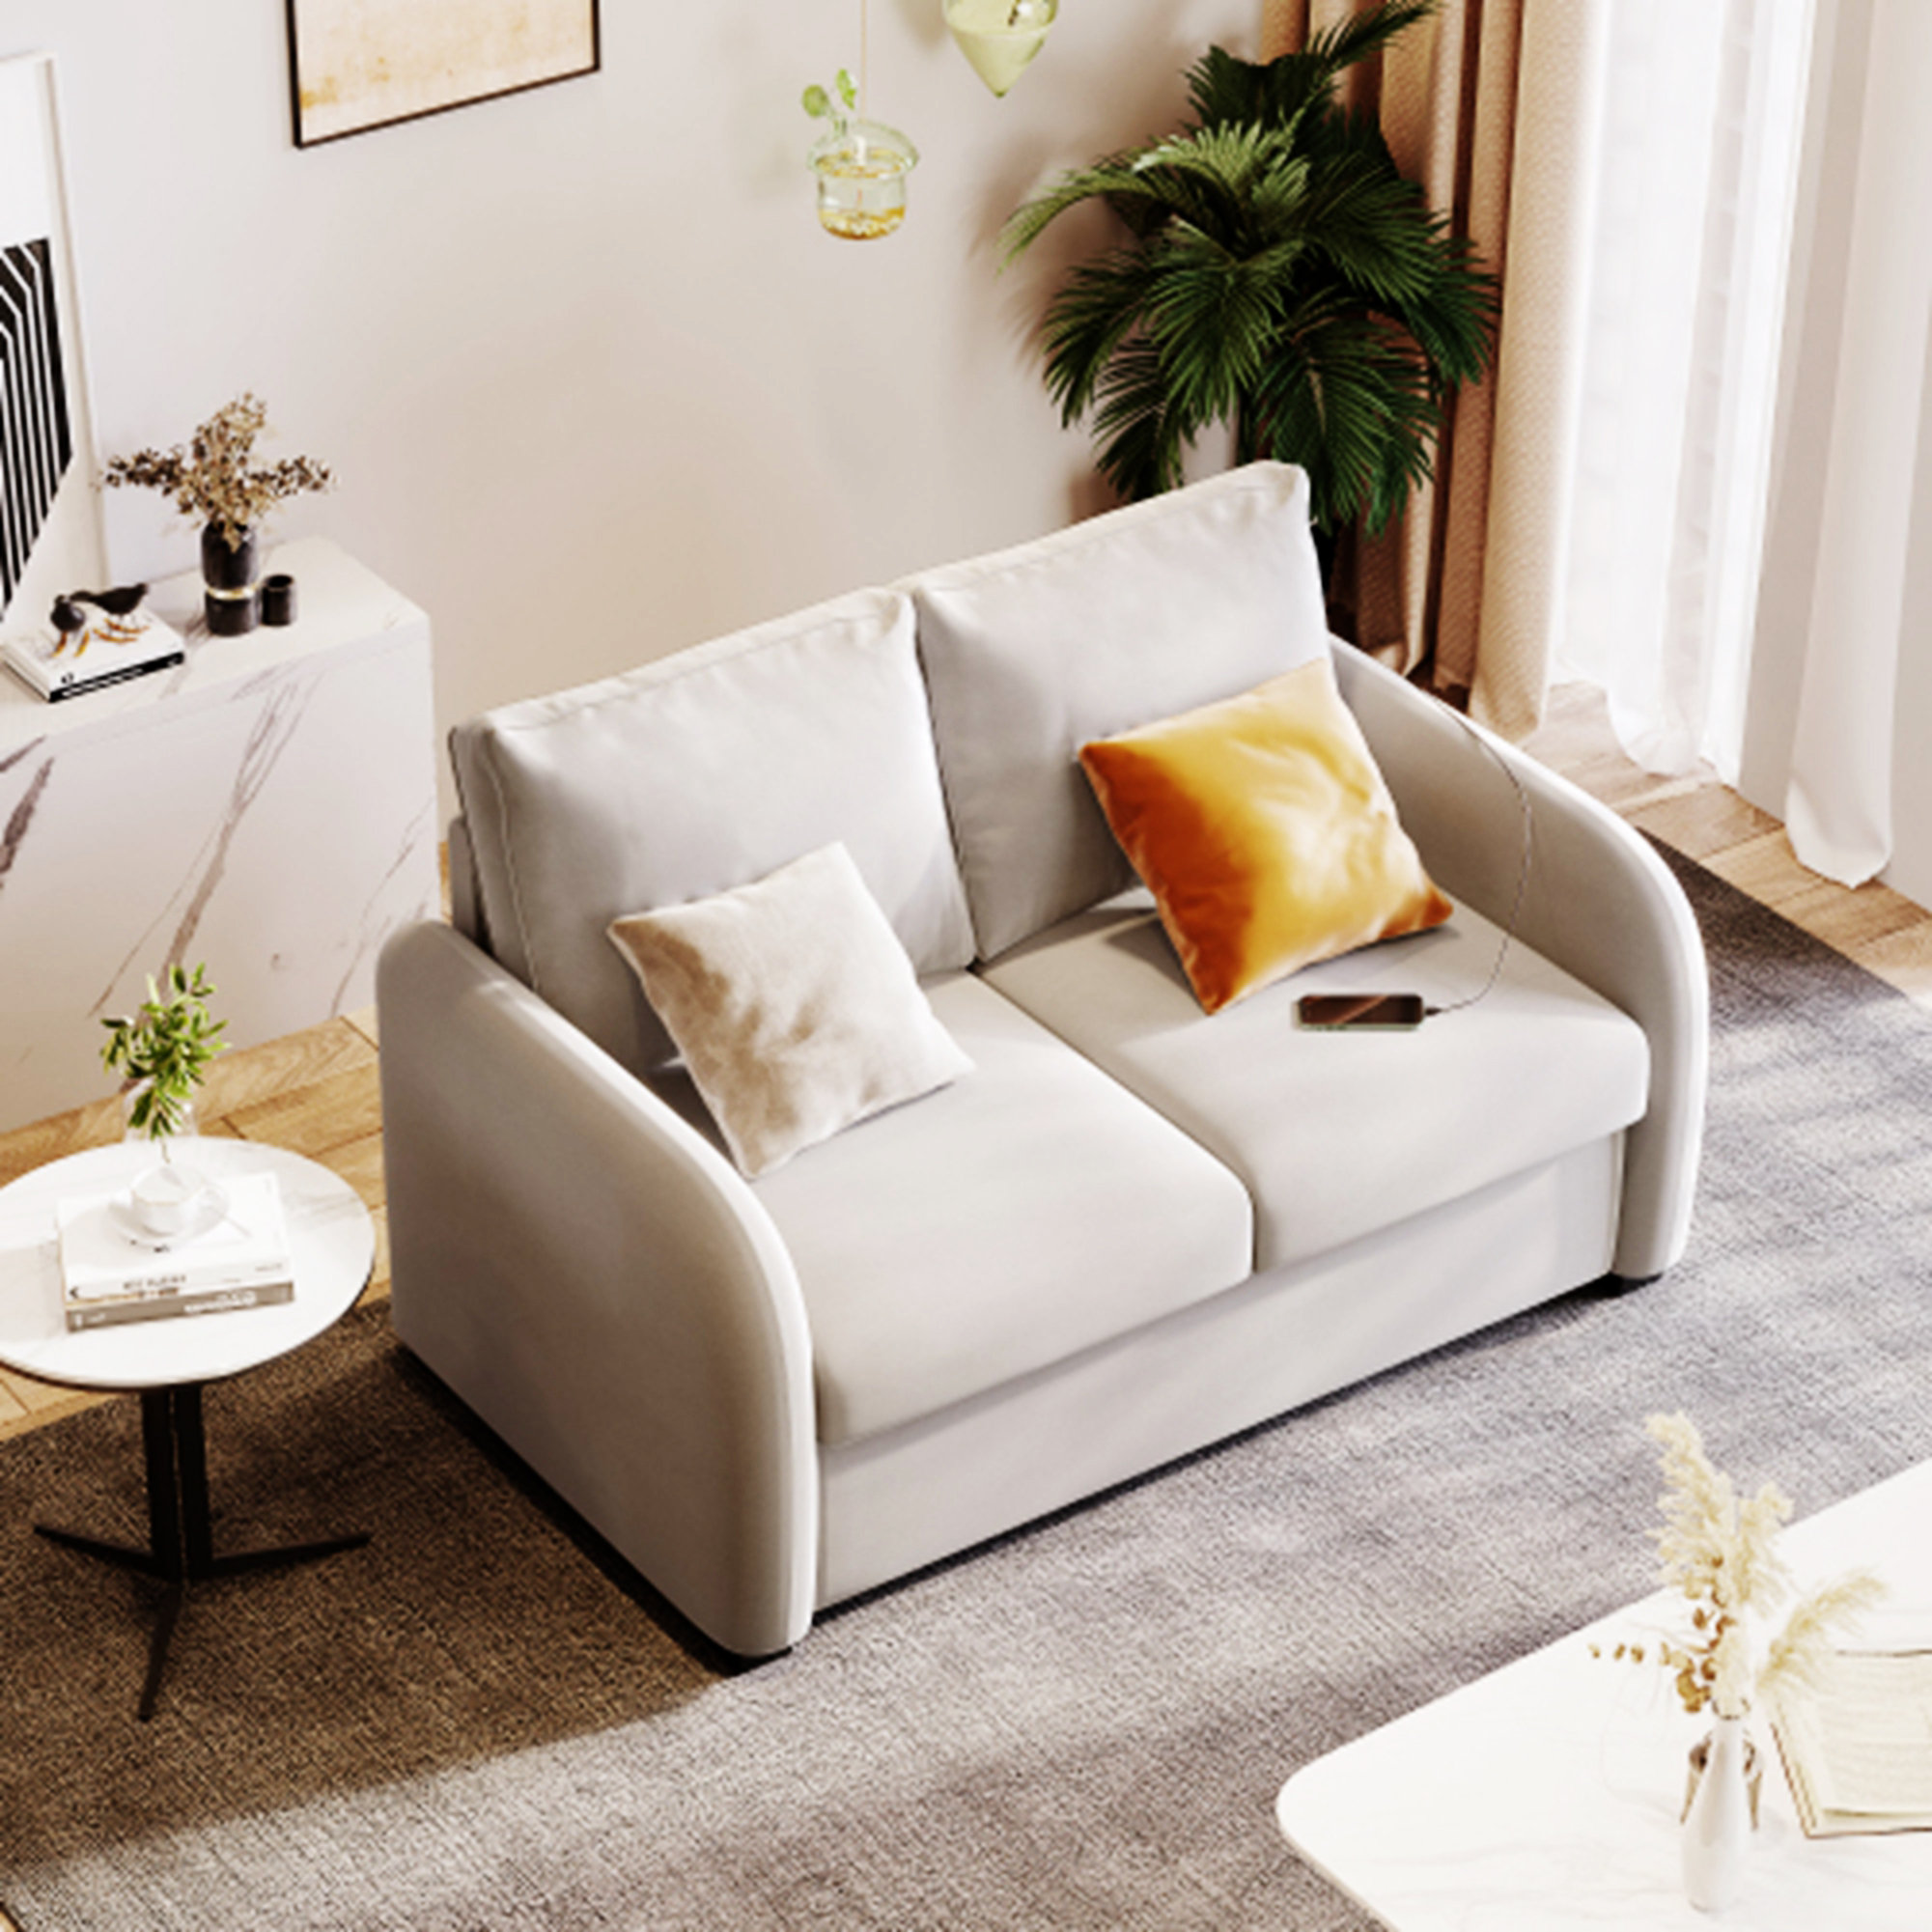 2483 Sofa Suite  Decor-Rest Furniture Ltd.